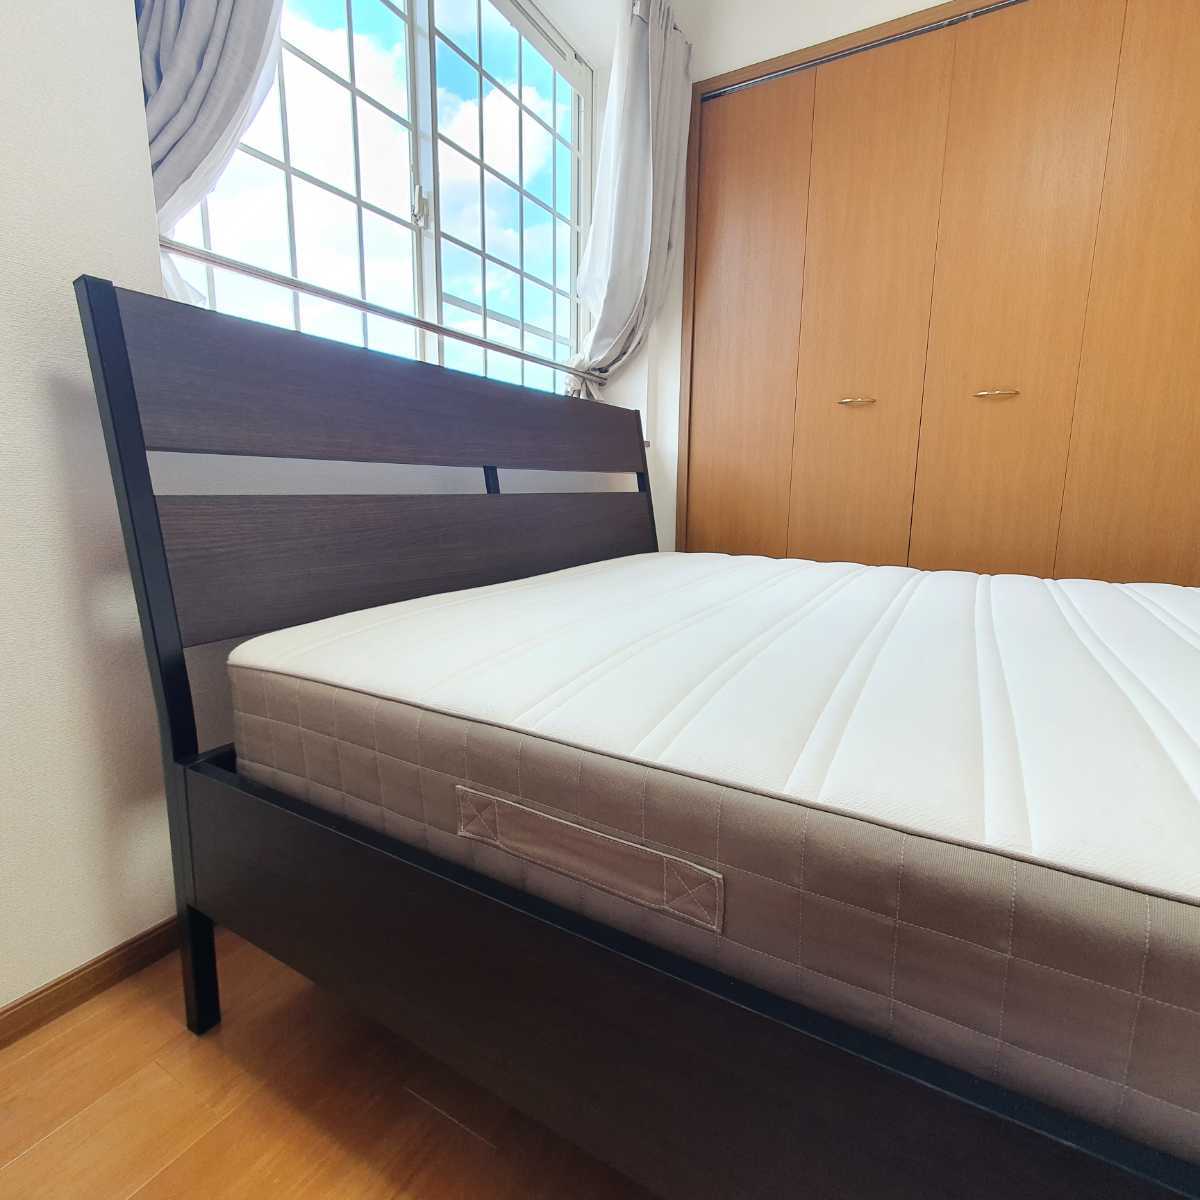 [ самовывоз возможно ] б/у товар IKEA TRYSILto белка .ru bed . матрац комплект двуспальная кровать 200x140 Okinawa префектура / отдаленный остров. рассылка не возможно 